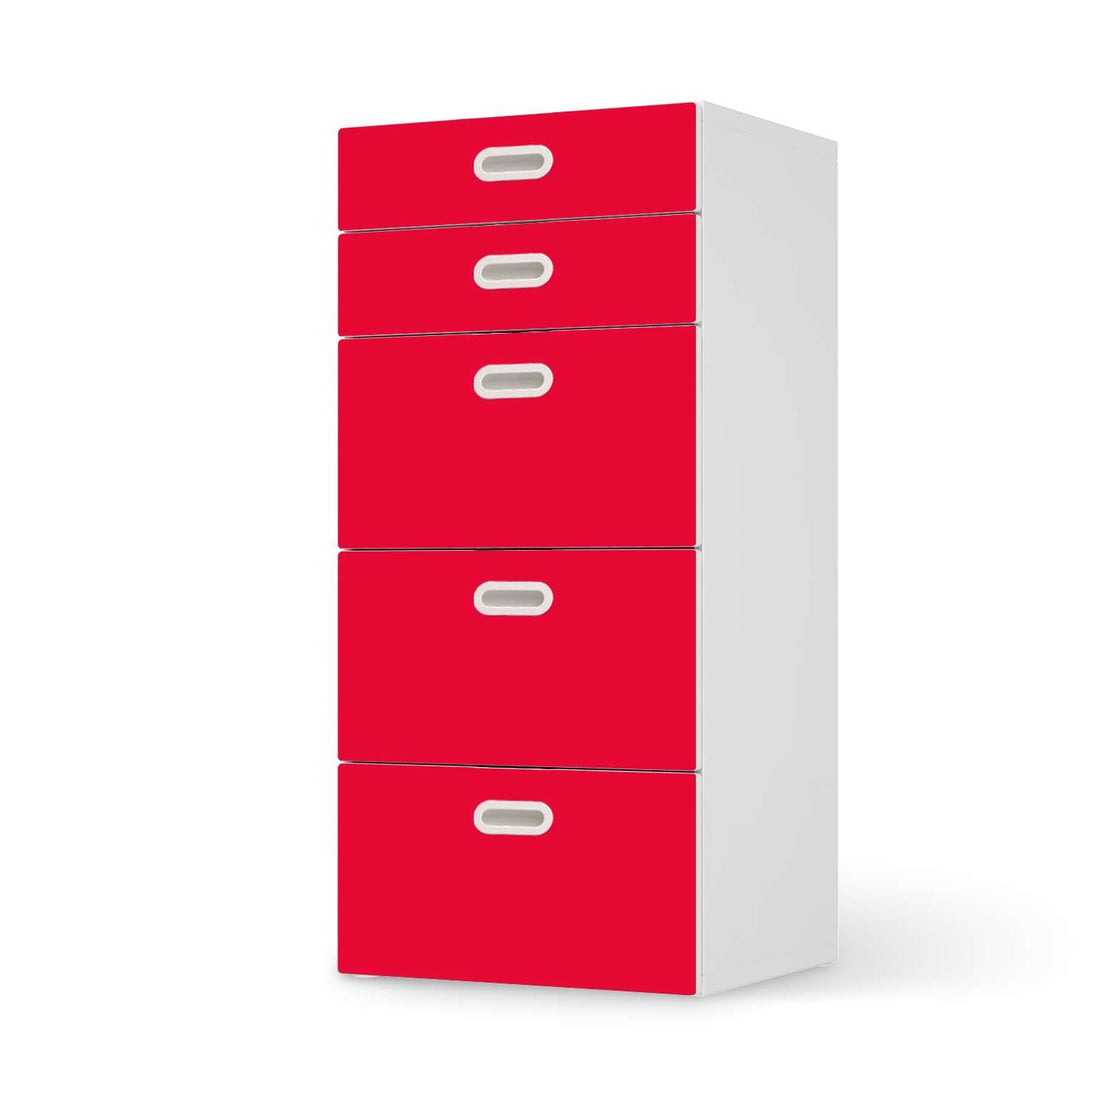 Möbel Klebefolie Rot Light - IKEA Stuva / Fritids Kommode - 5 Schubladen  - weiss